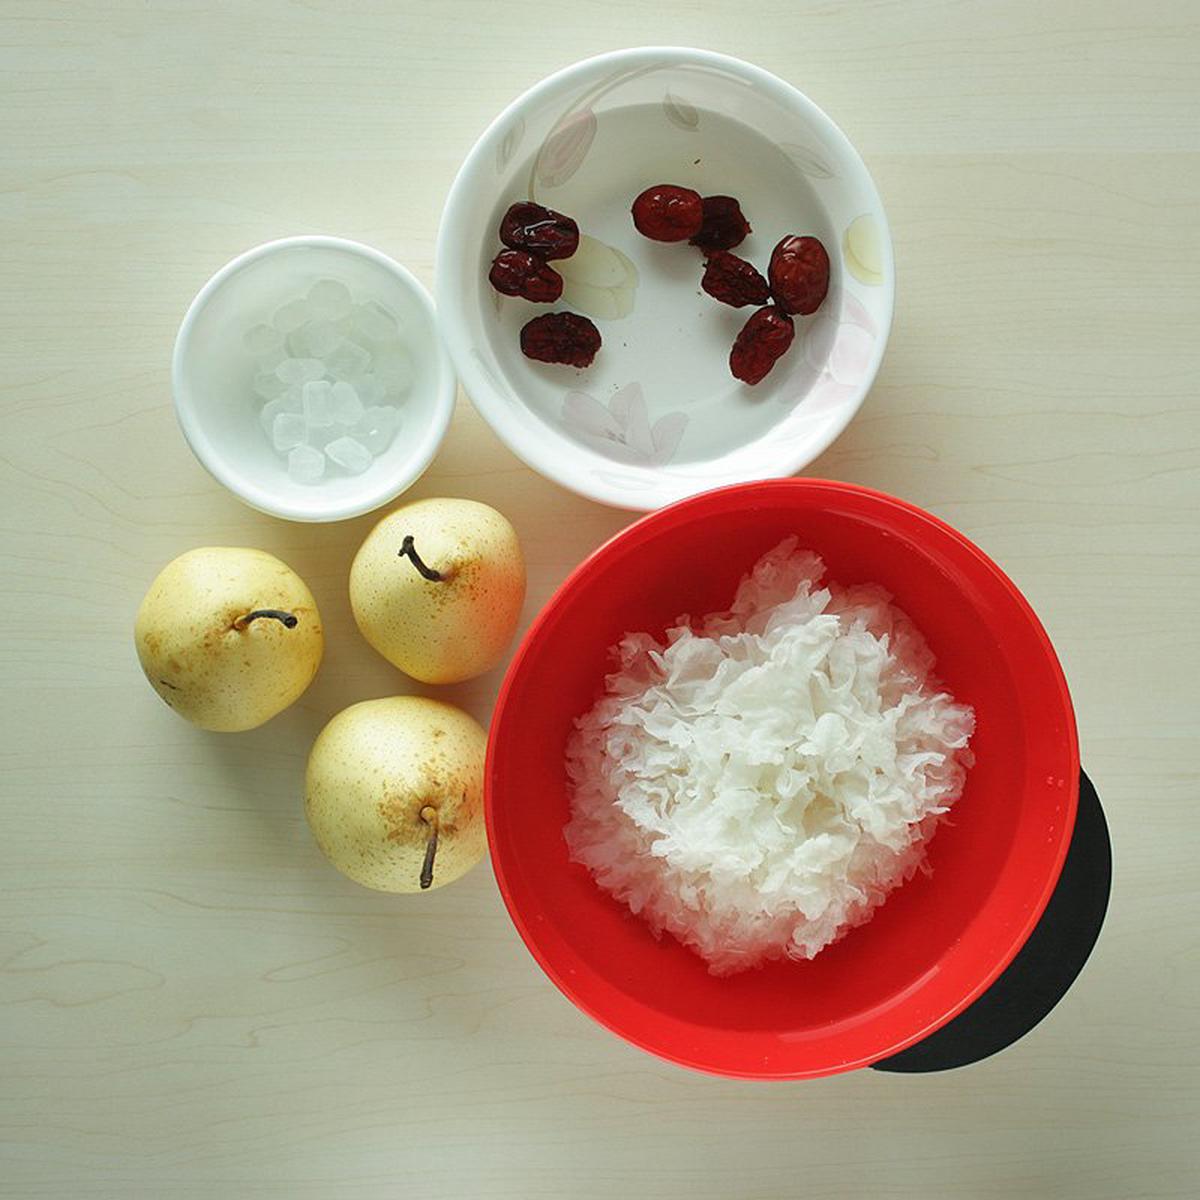 Ingredients: snow fungus, Ya Li pears, red dates, and rock sugar